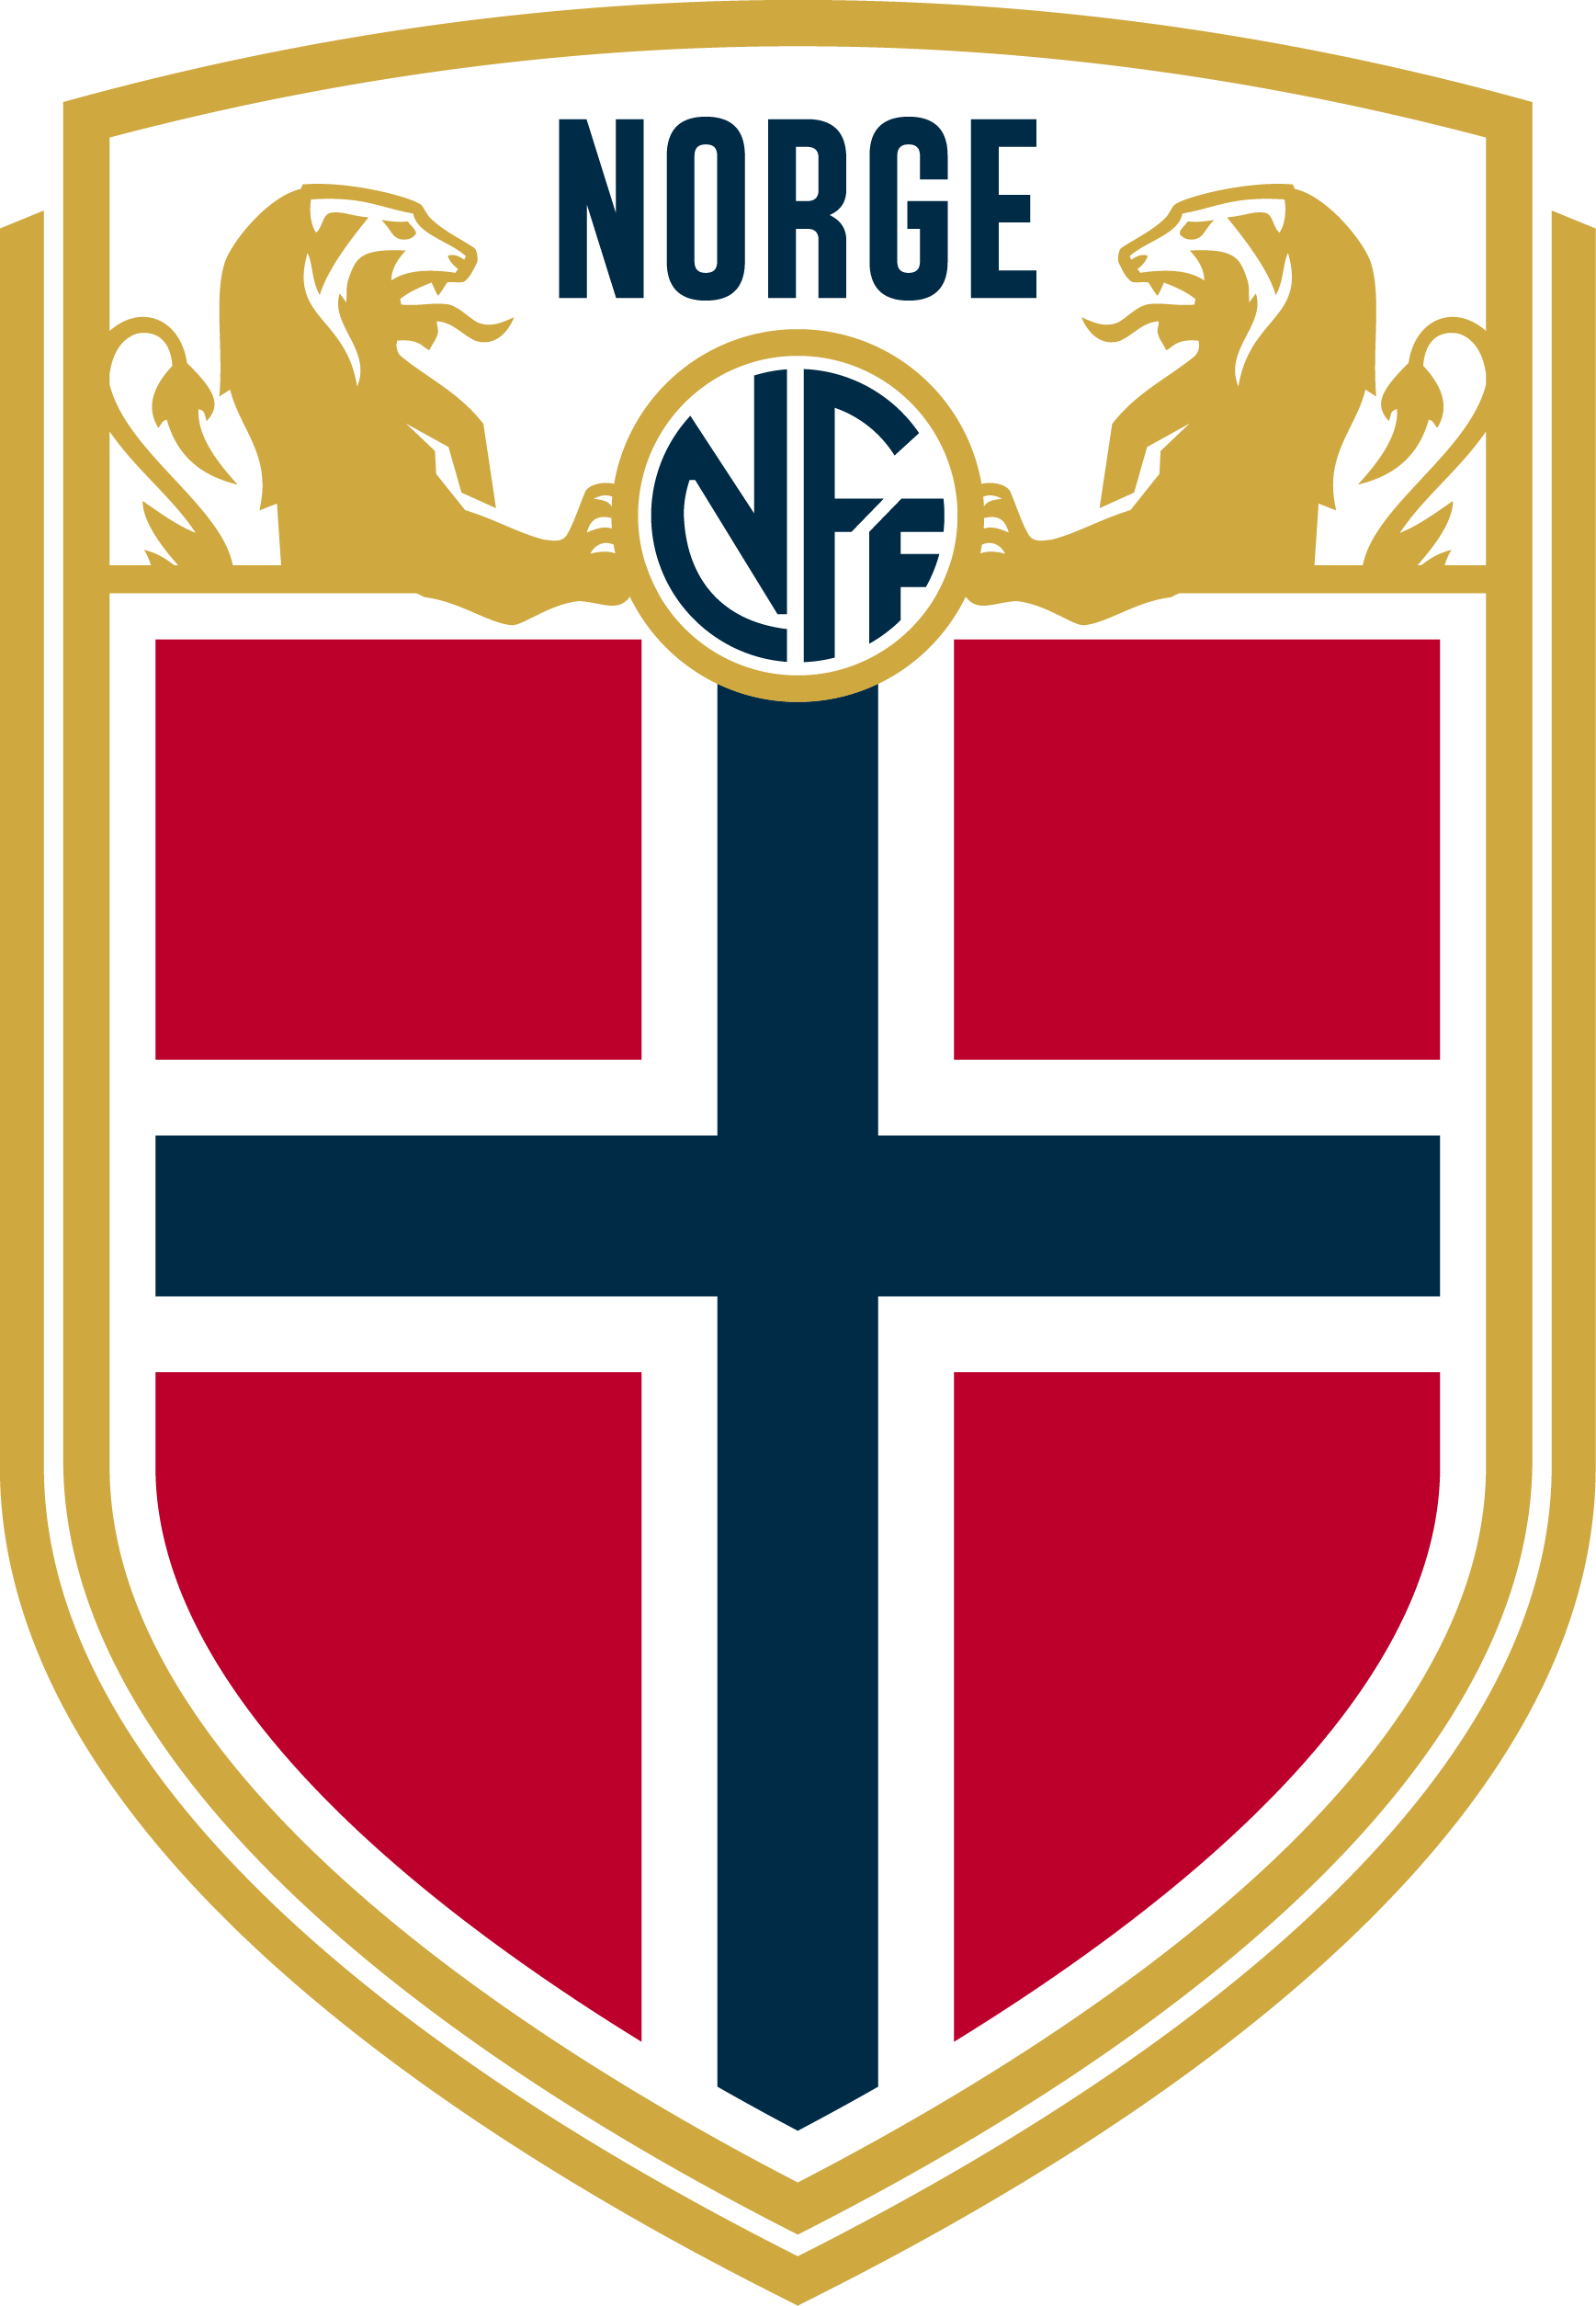 挪威國家男子足球隊